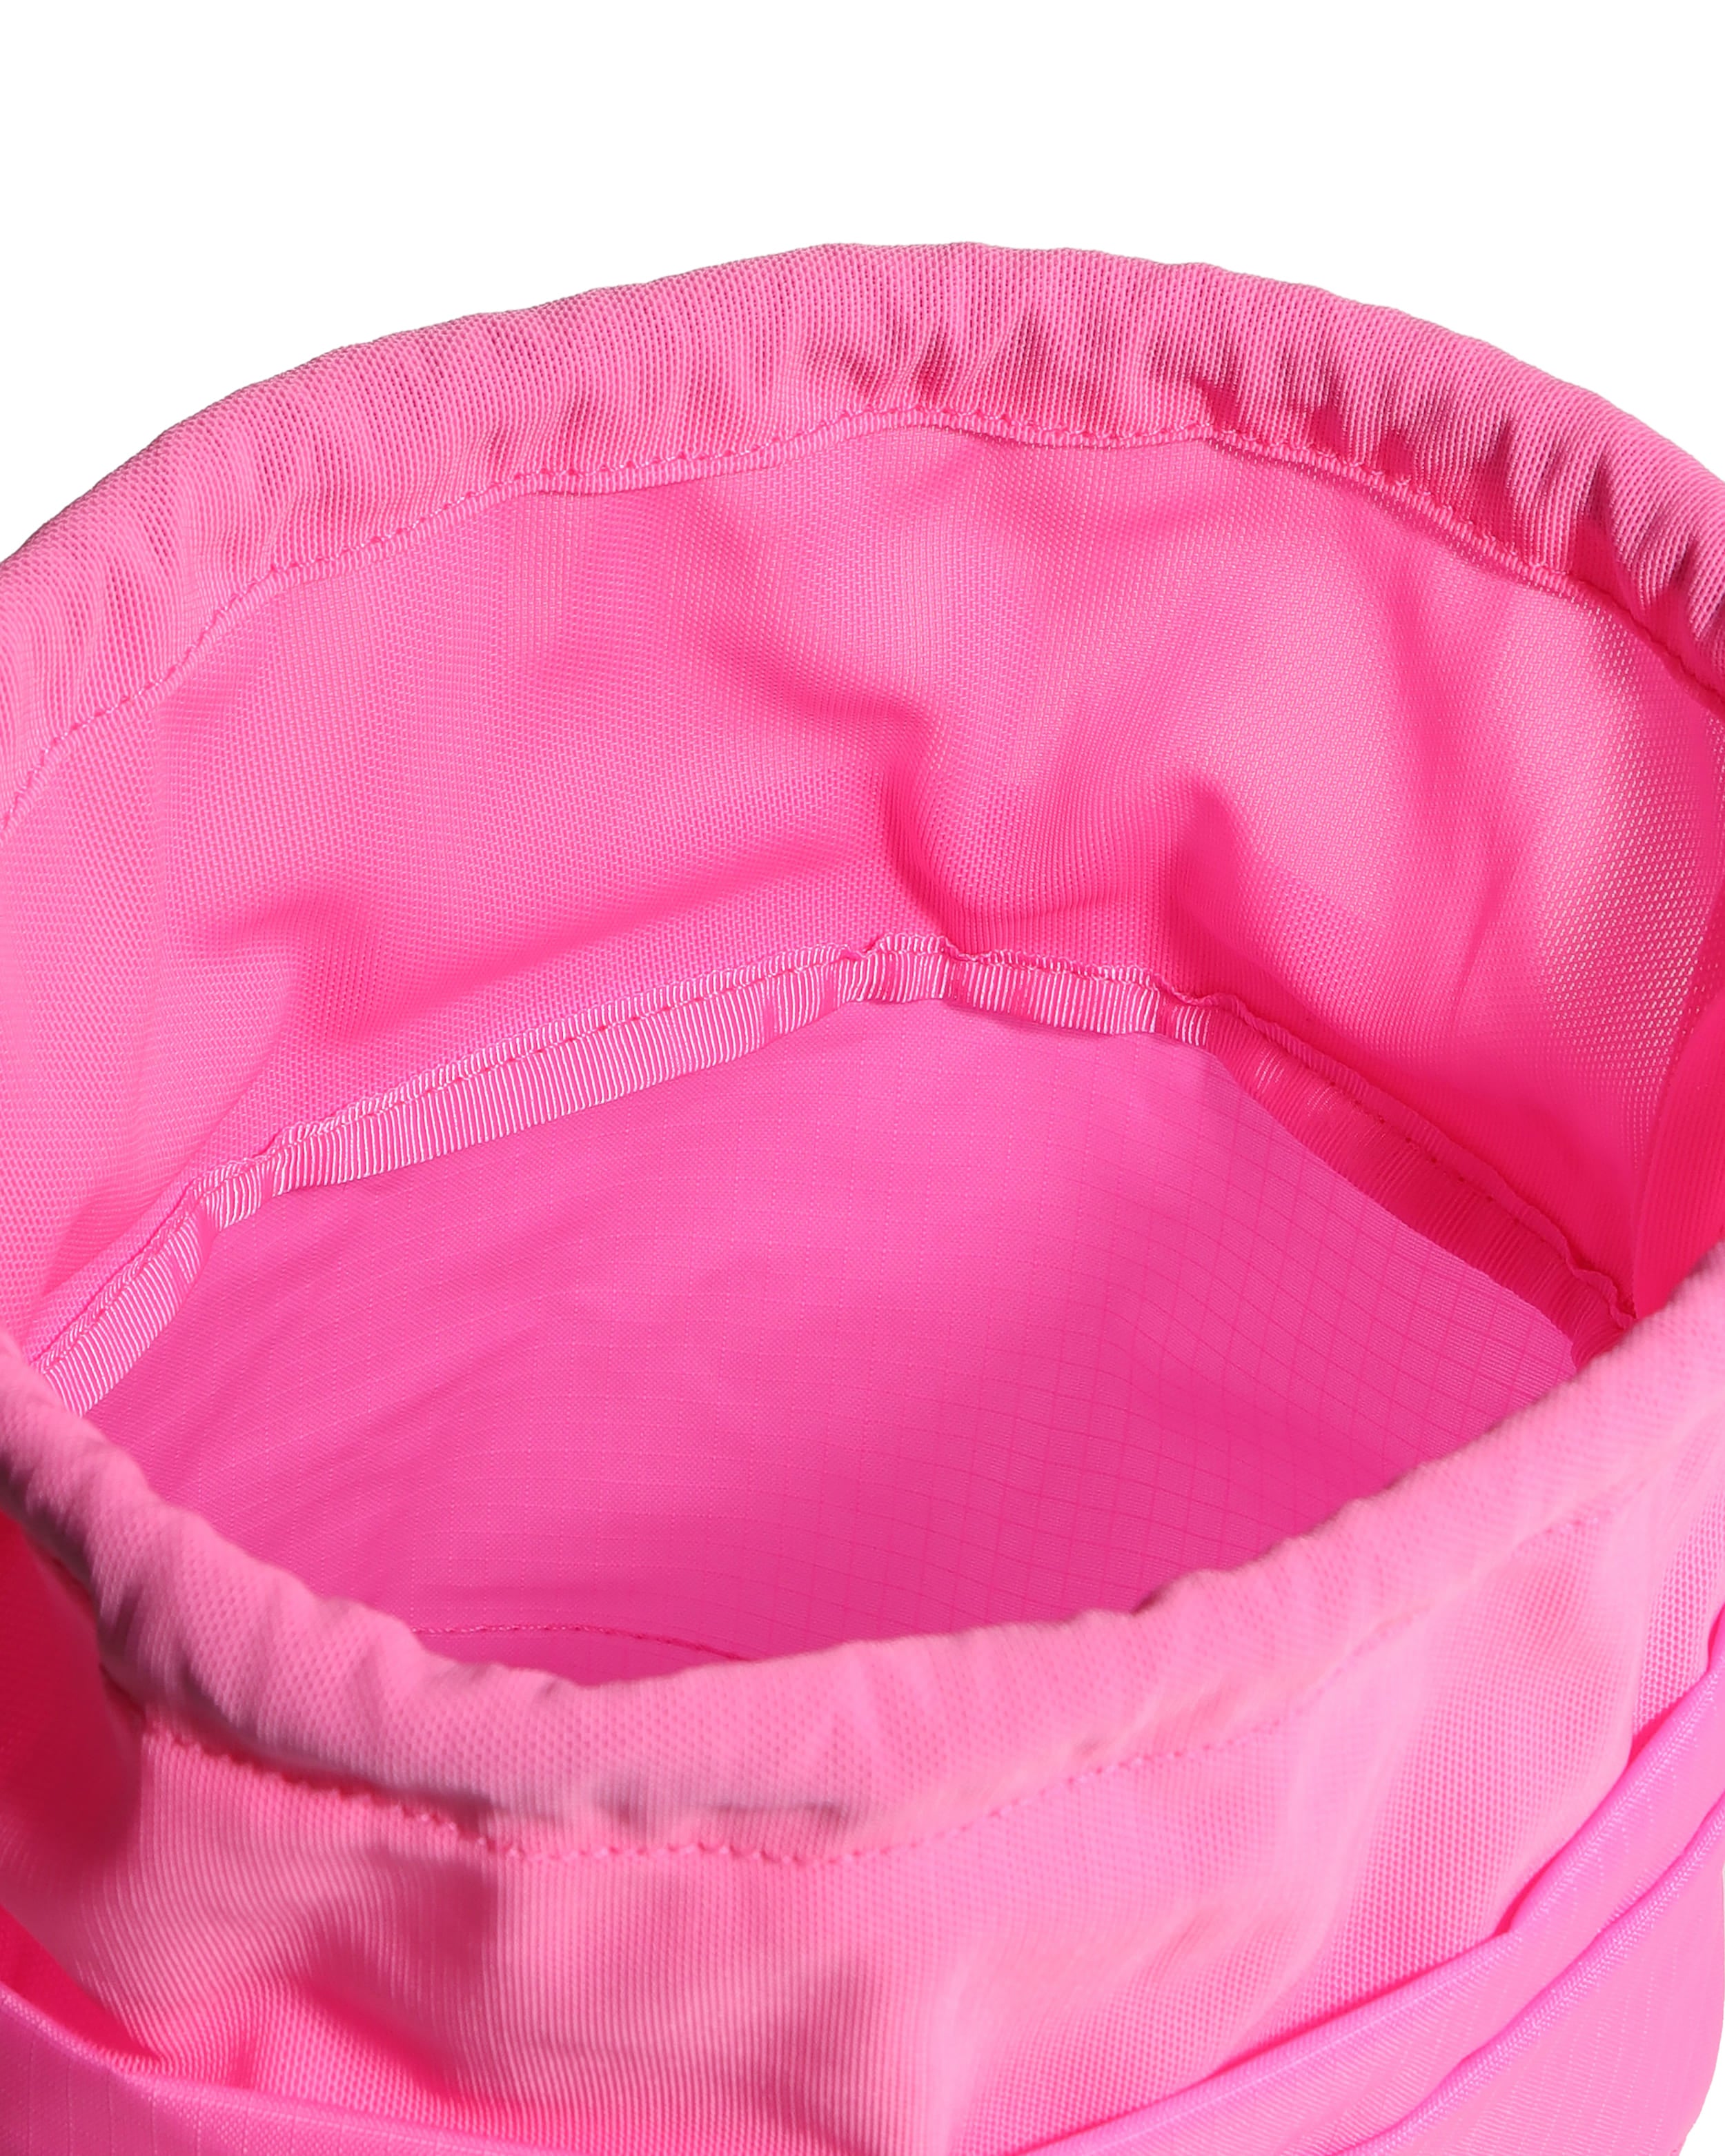 Travel Ripstop Bucket - Highlighter Pink